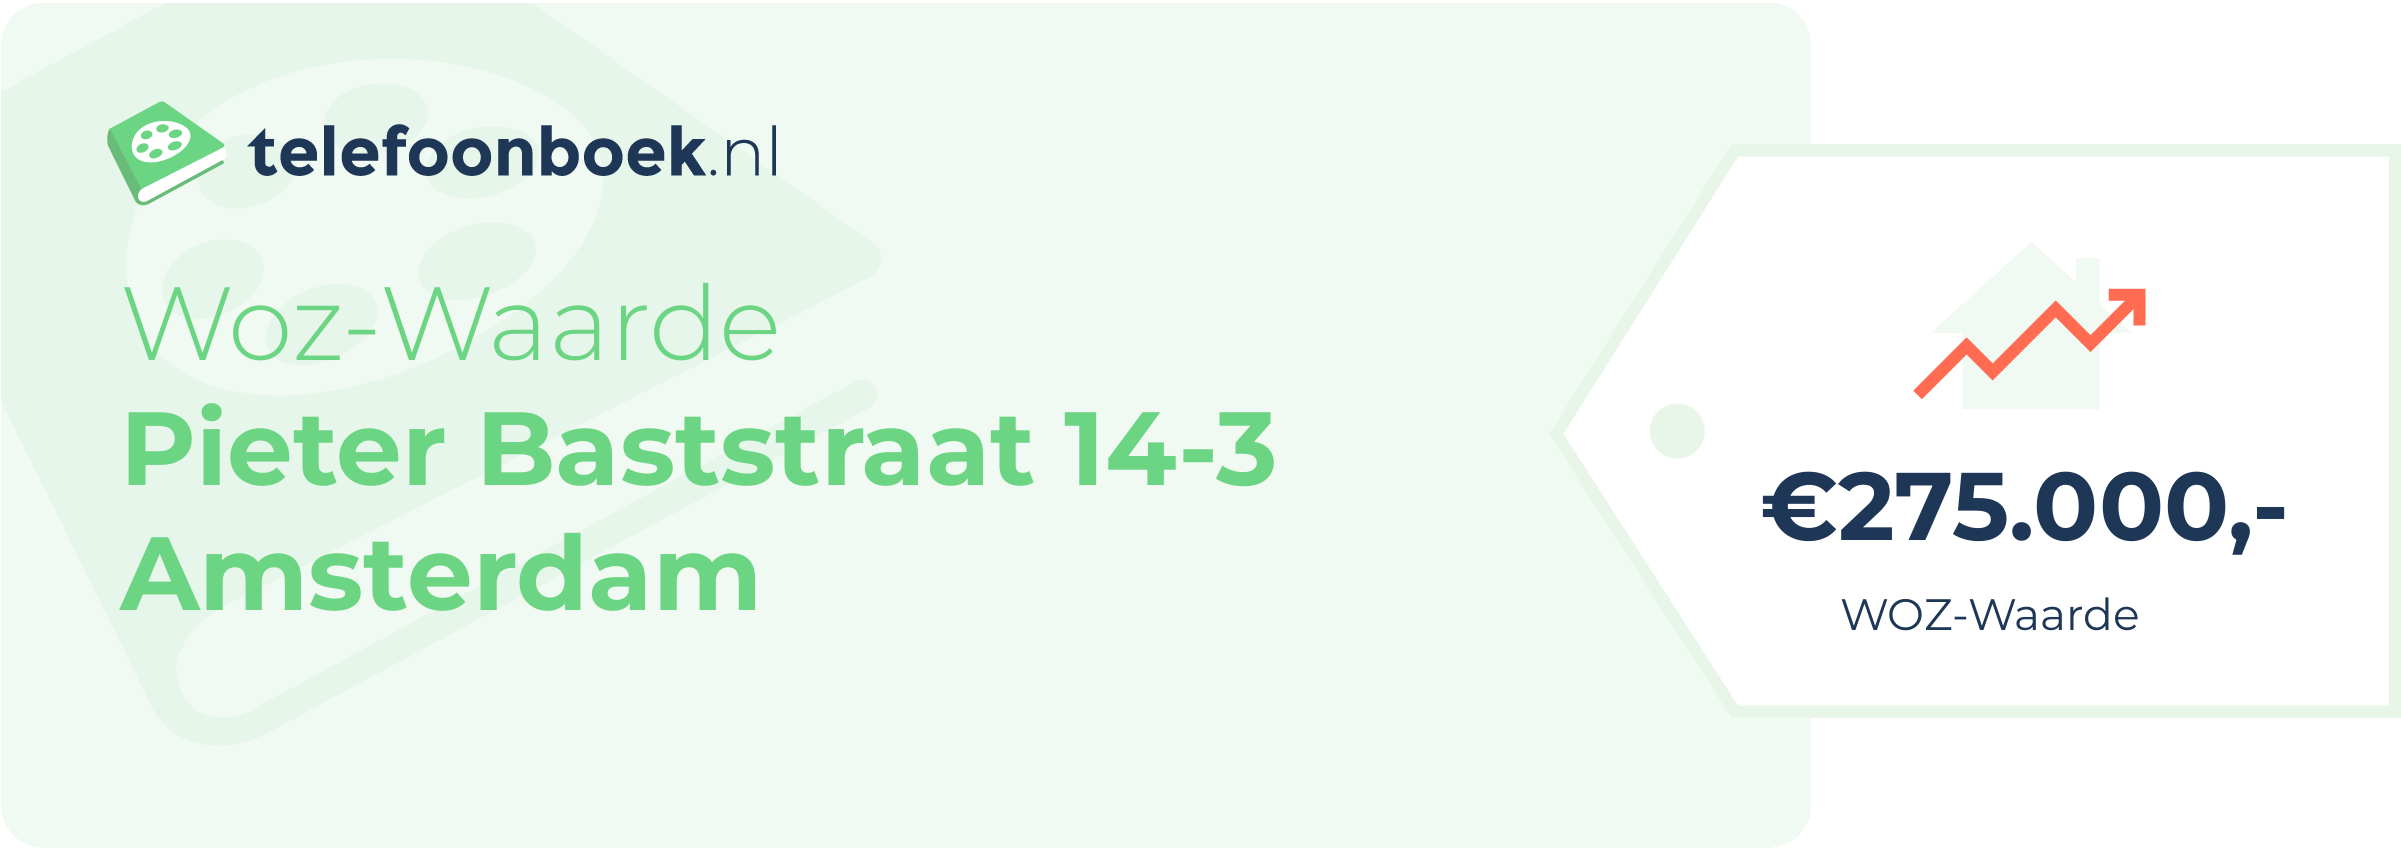 WOZ-waarde Pieter Baststraat 14-3 Amsterdam